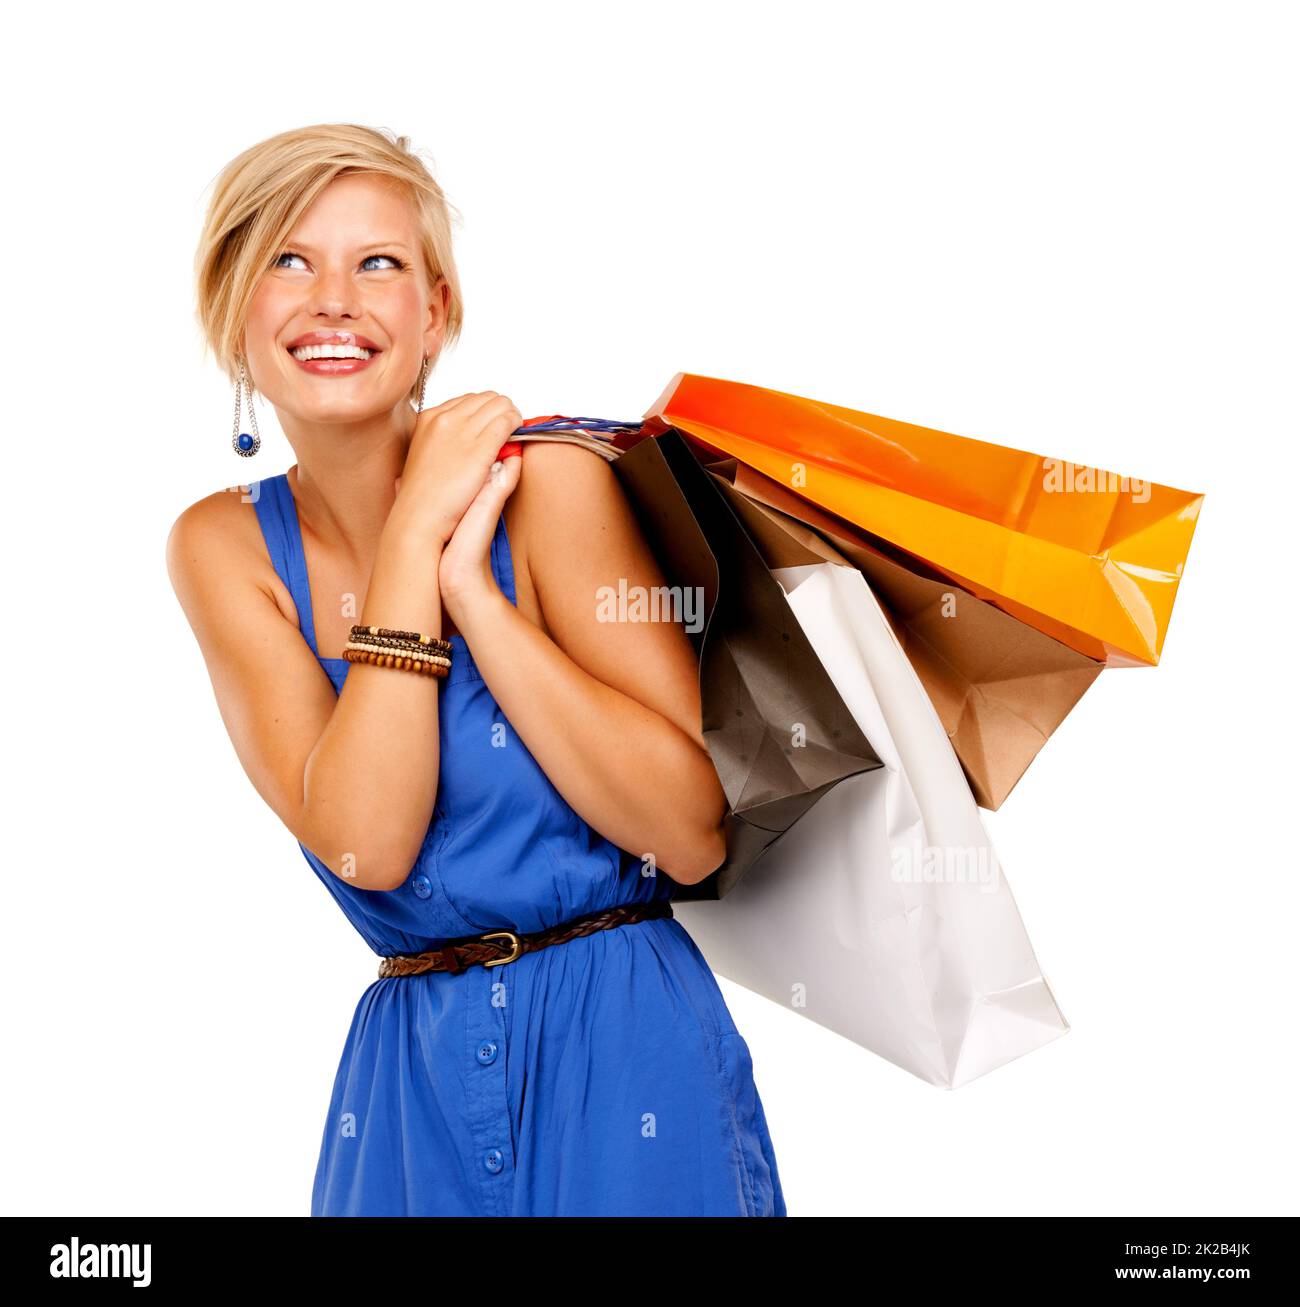 Weiter zum nächsten Verkauf. Eine attraktive junge Frau mit einem Haufen Einkaufstaschen. Stockfoto